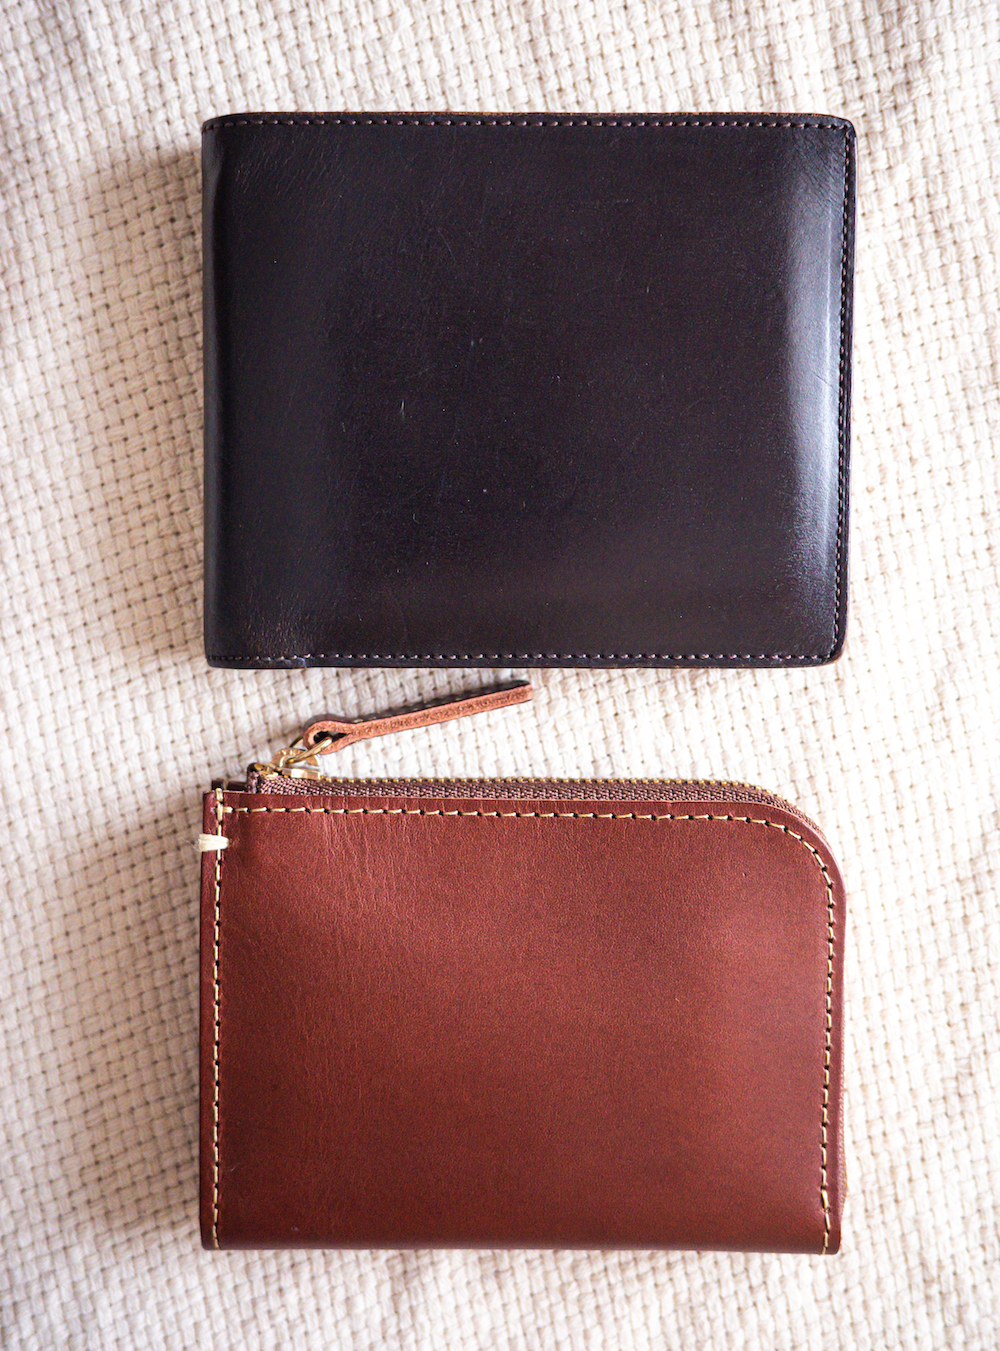 土屋鞄製造所『ディアリオ ハンディLファスナー』と二つ折り財布のサイズ比較